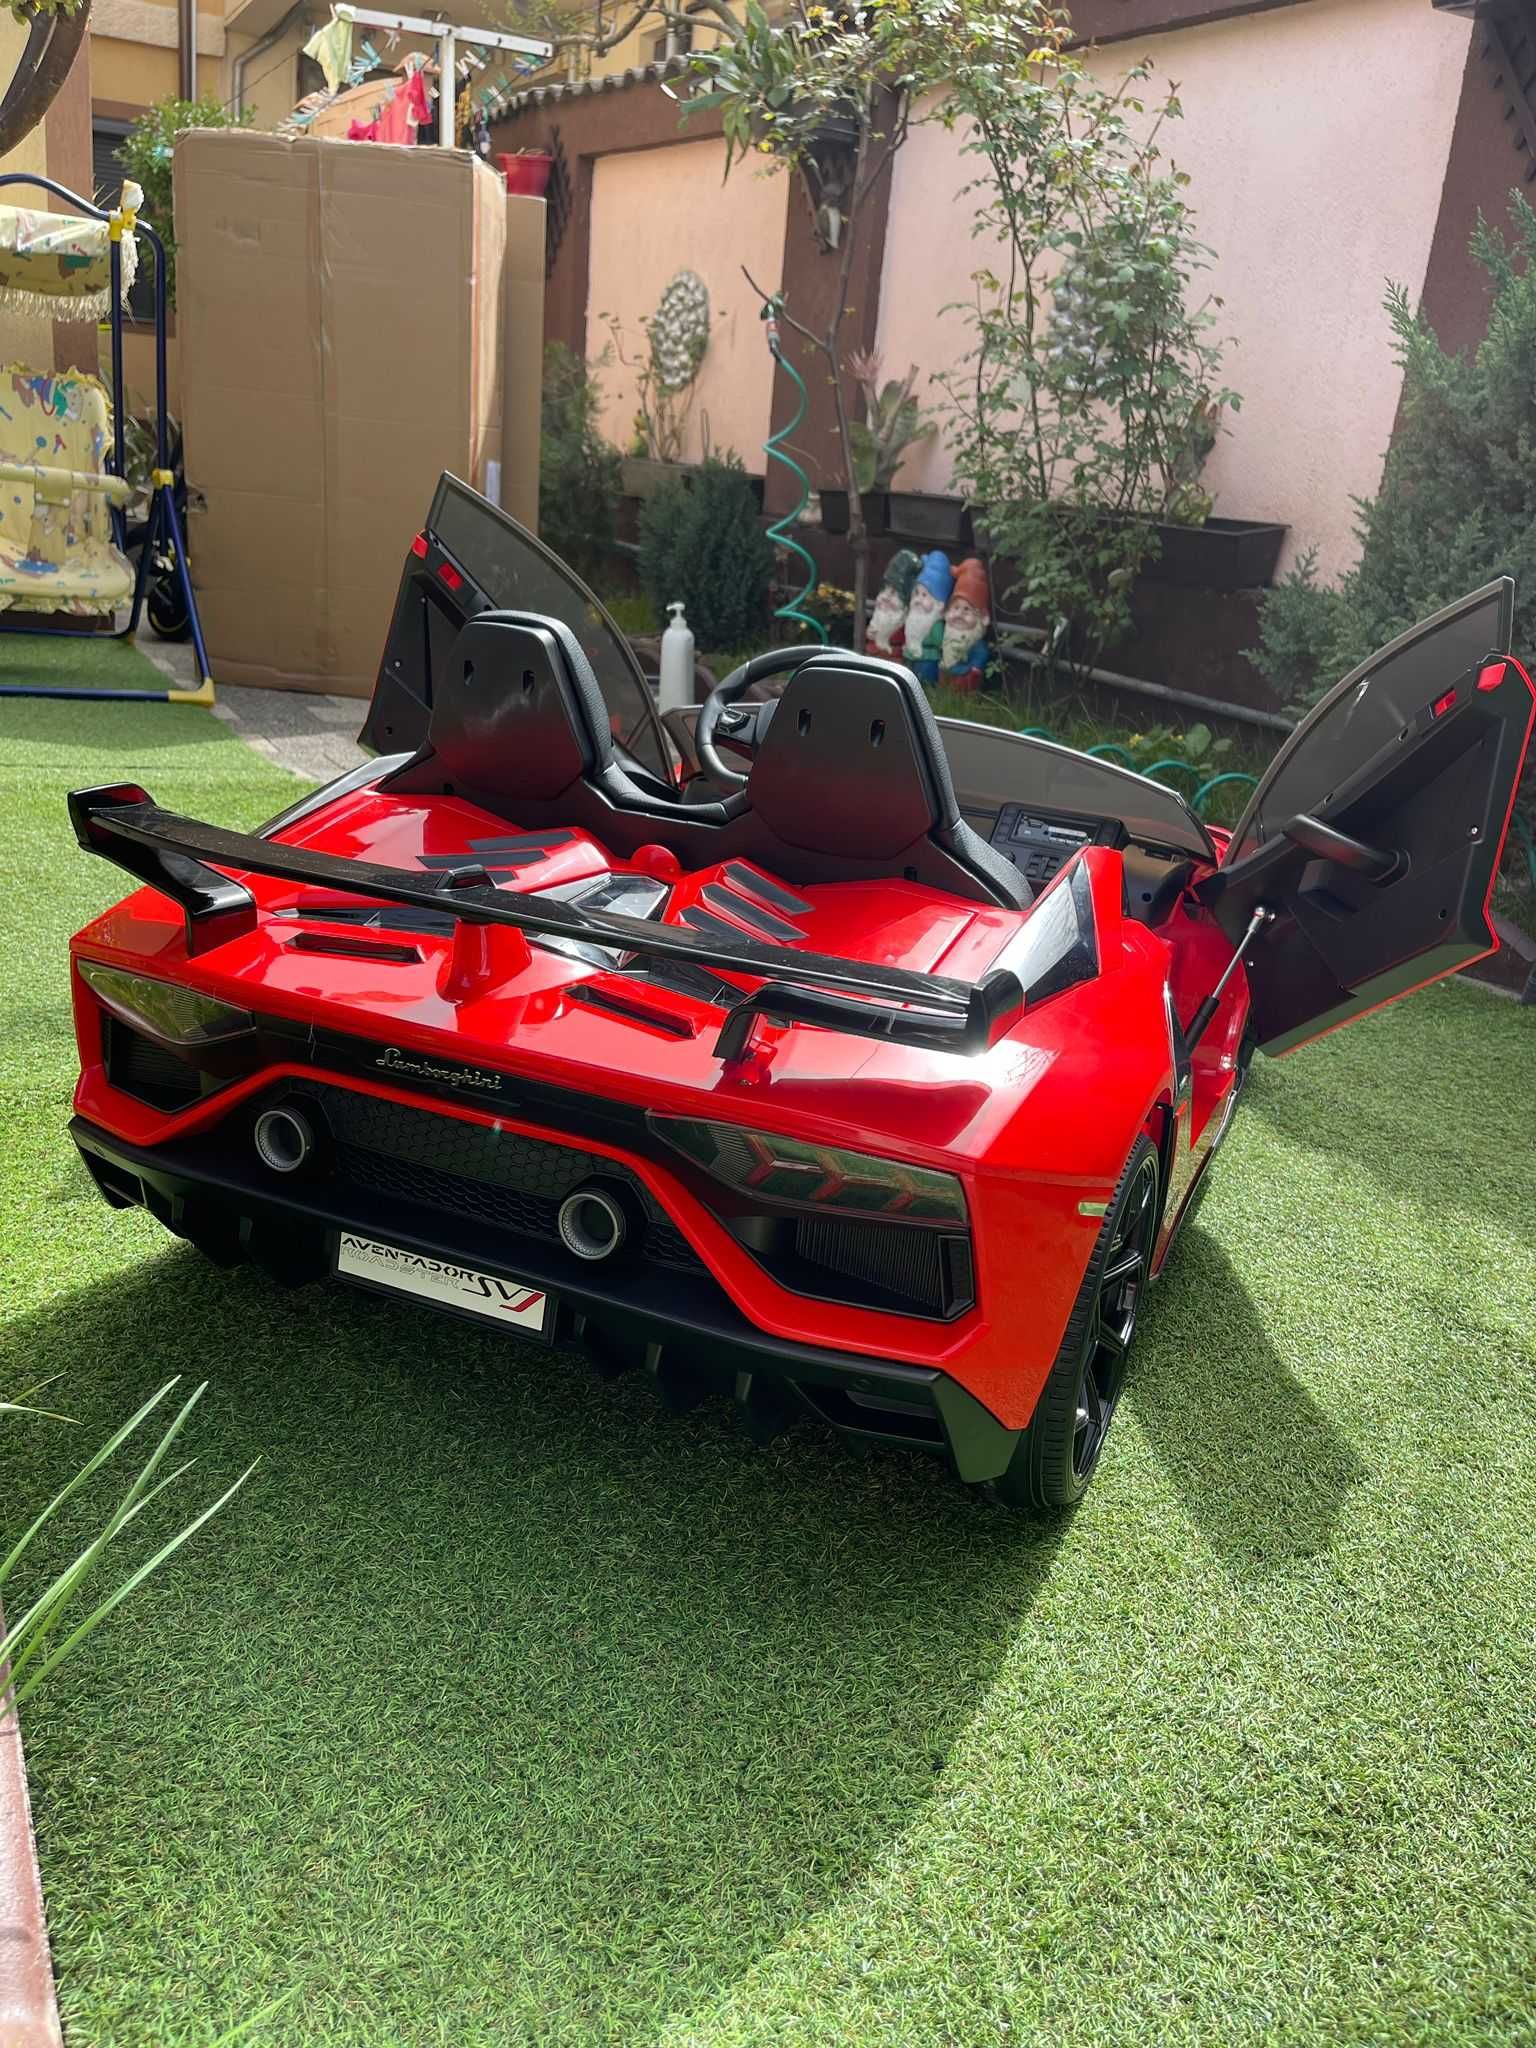 Lamborghini electric pentru copii